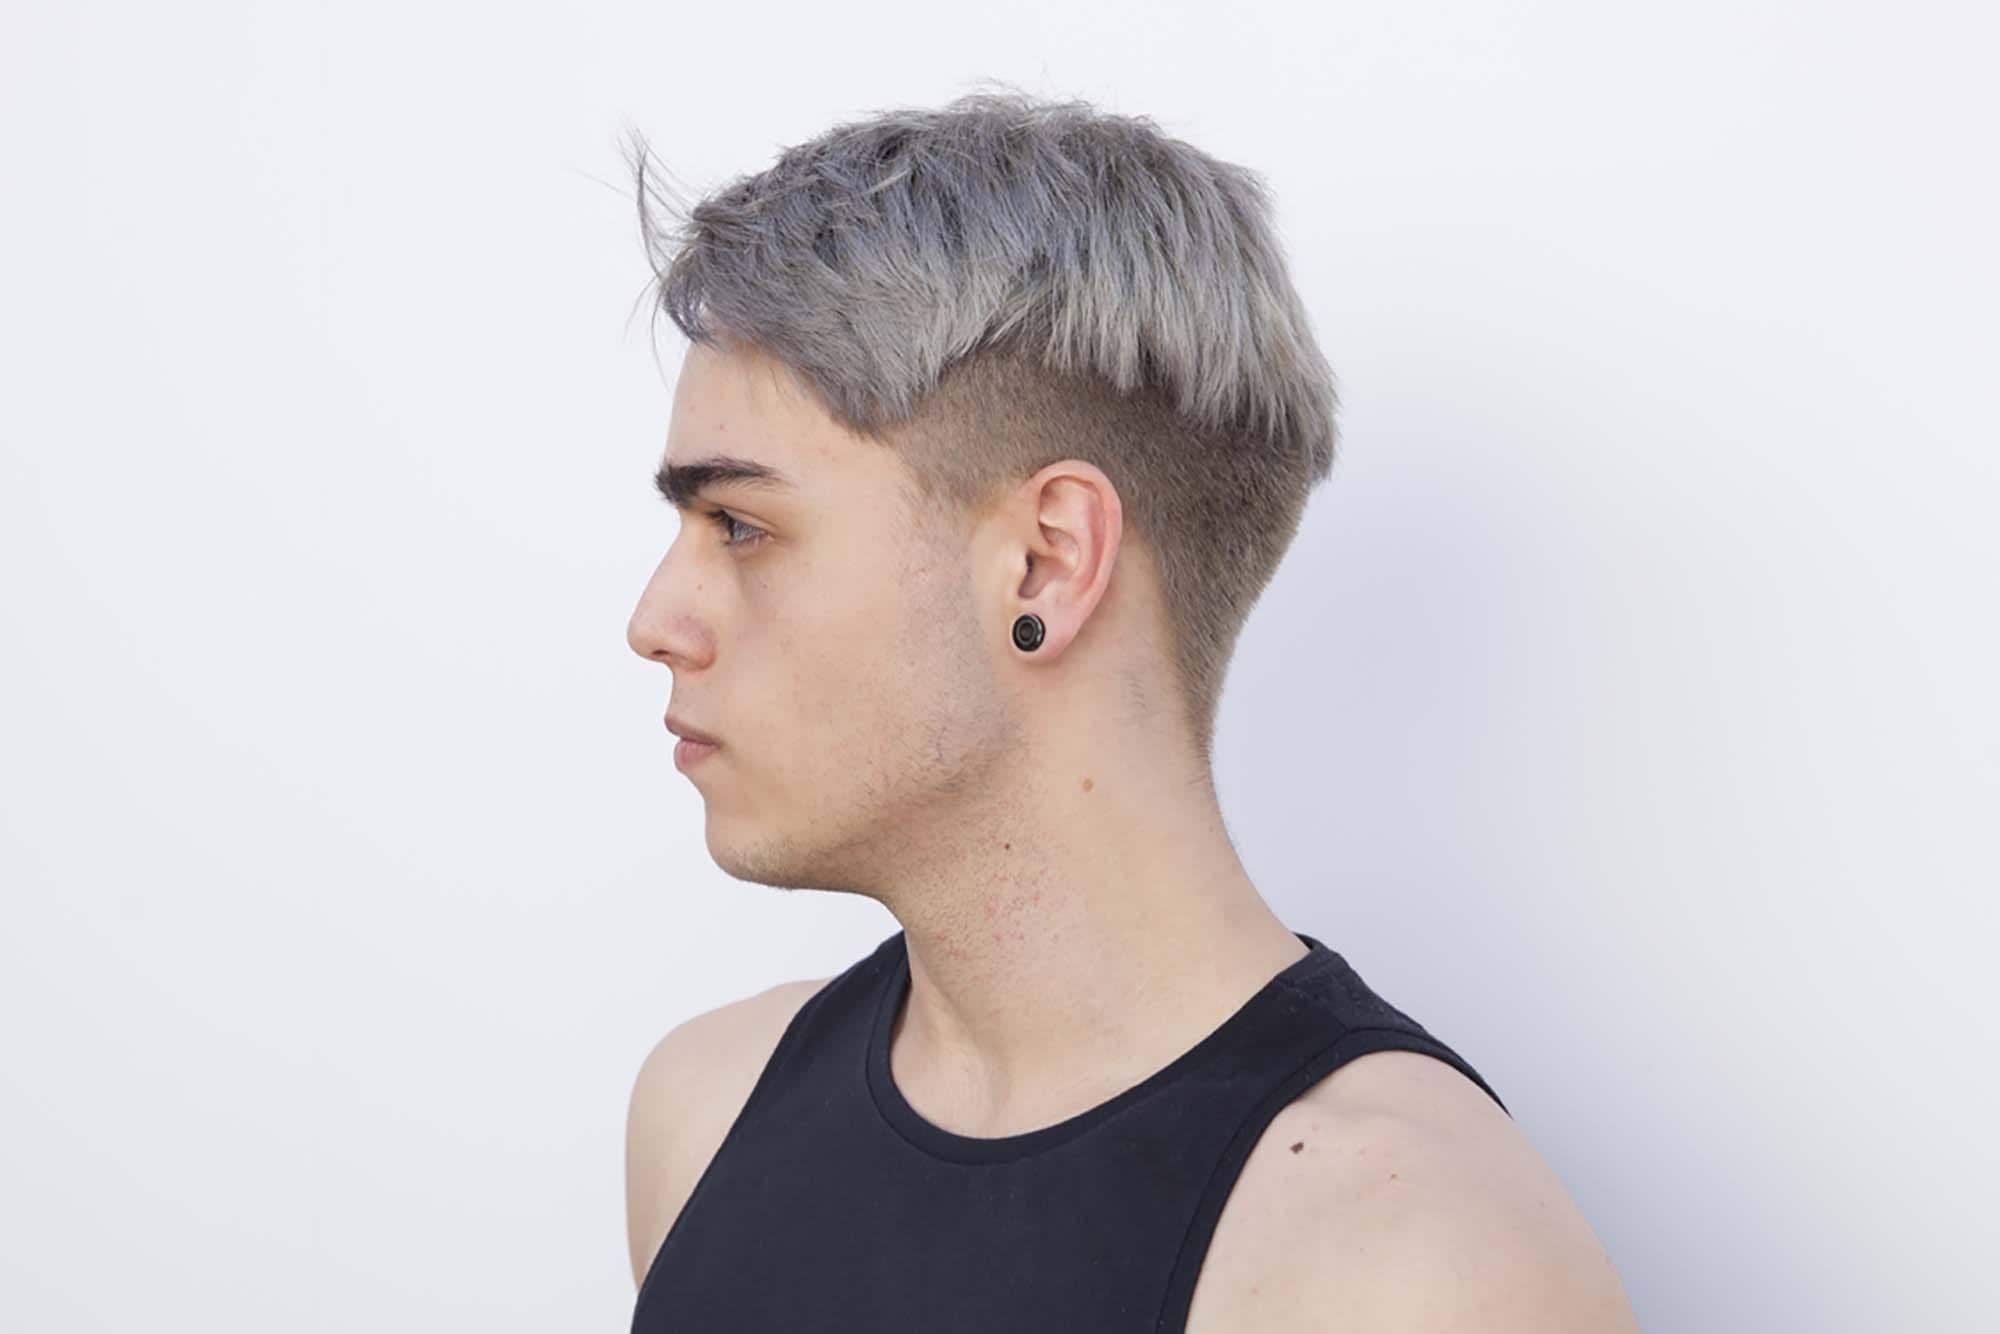 Парни с пепельными волосами: выбор серой краски для мужских причесок. Как покрасить волосы в серебряный цвет? Кому подойдет окрашивание?